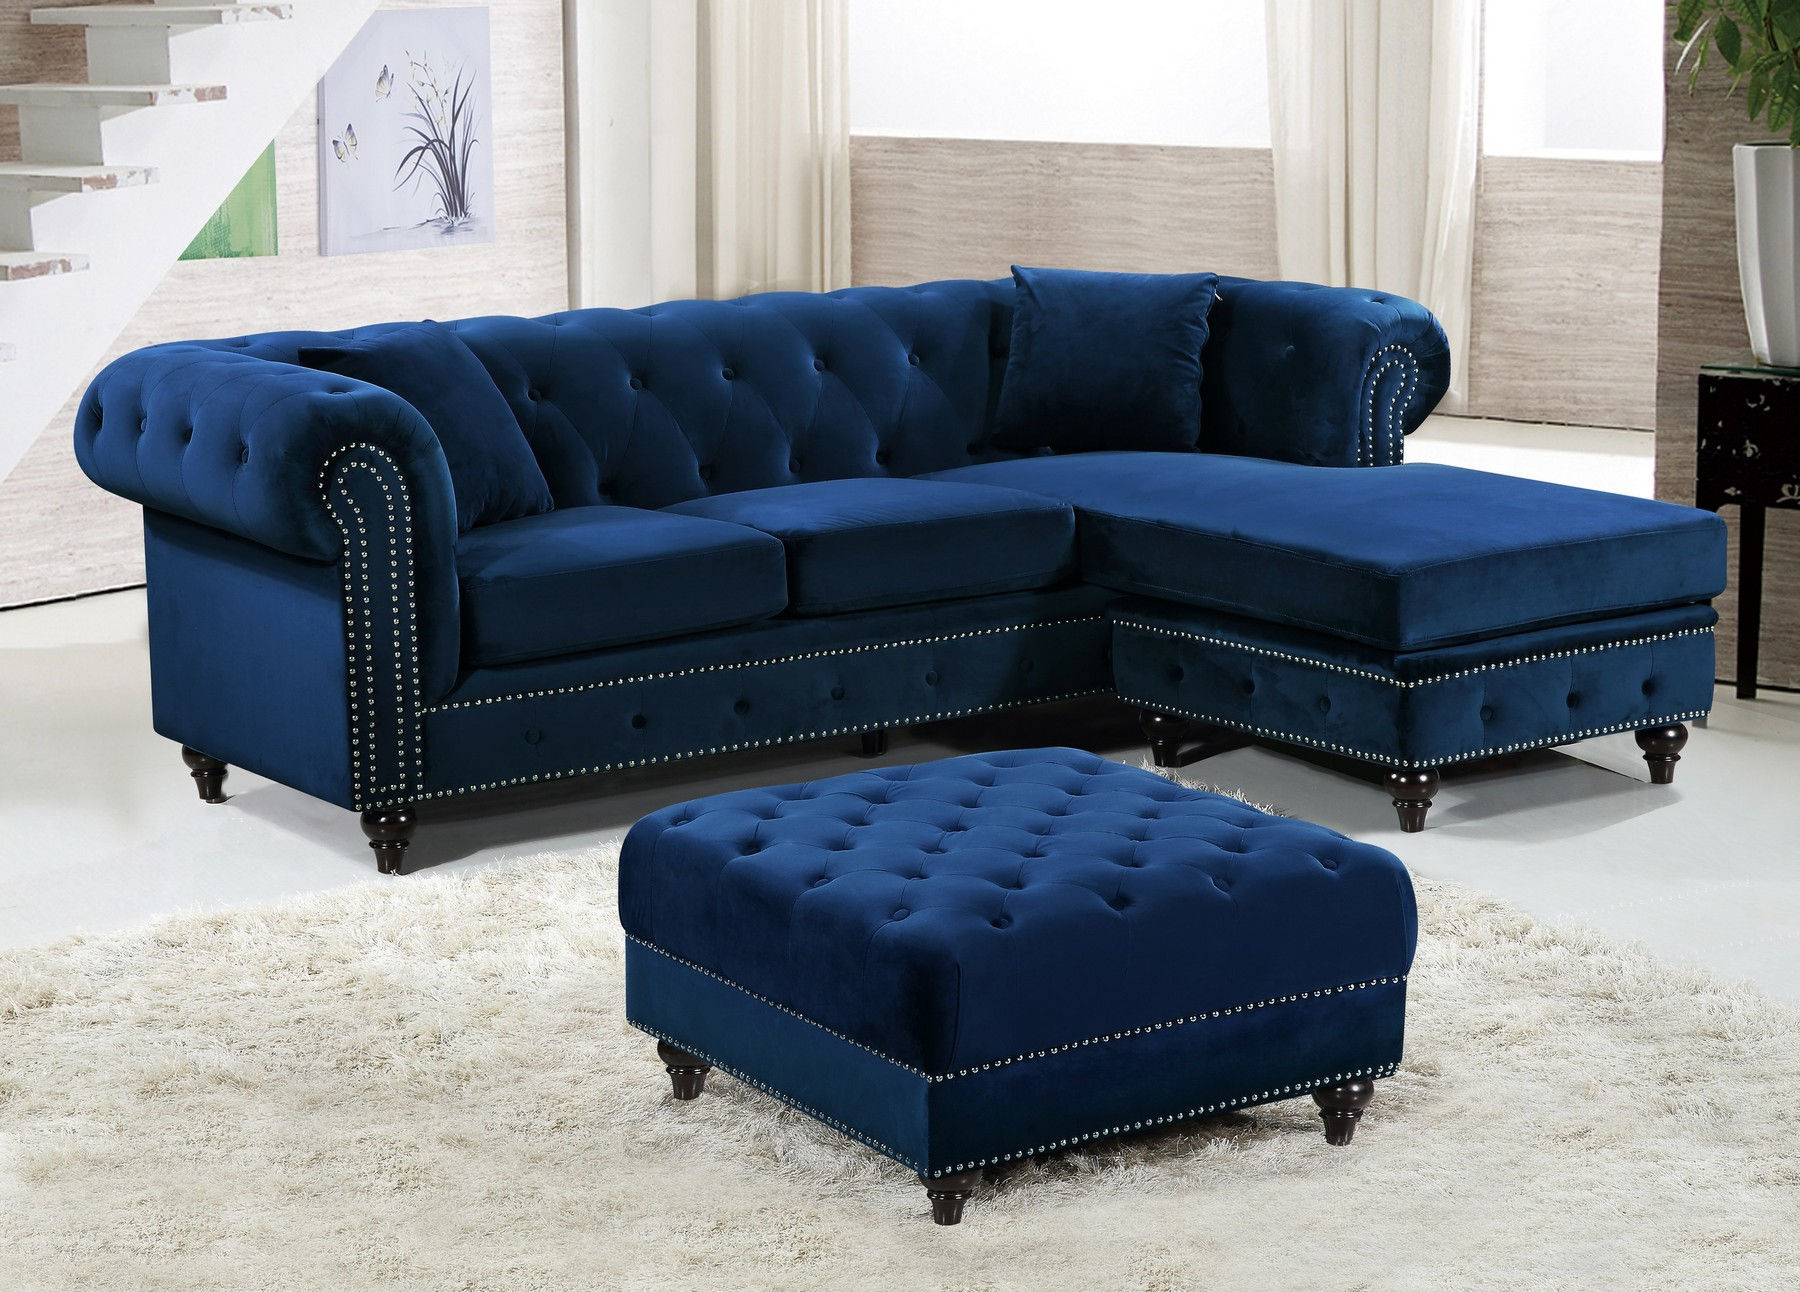 Sabrina Navy Sectional Sofa Ottoman 667 Meridian Furniture Living Room Sets Comfyco Furniture